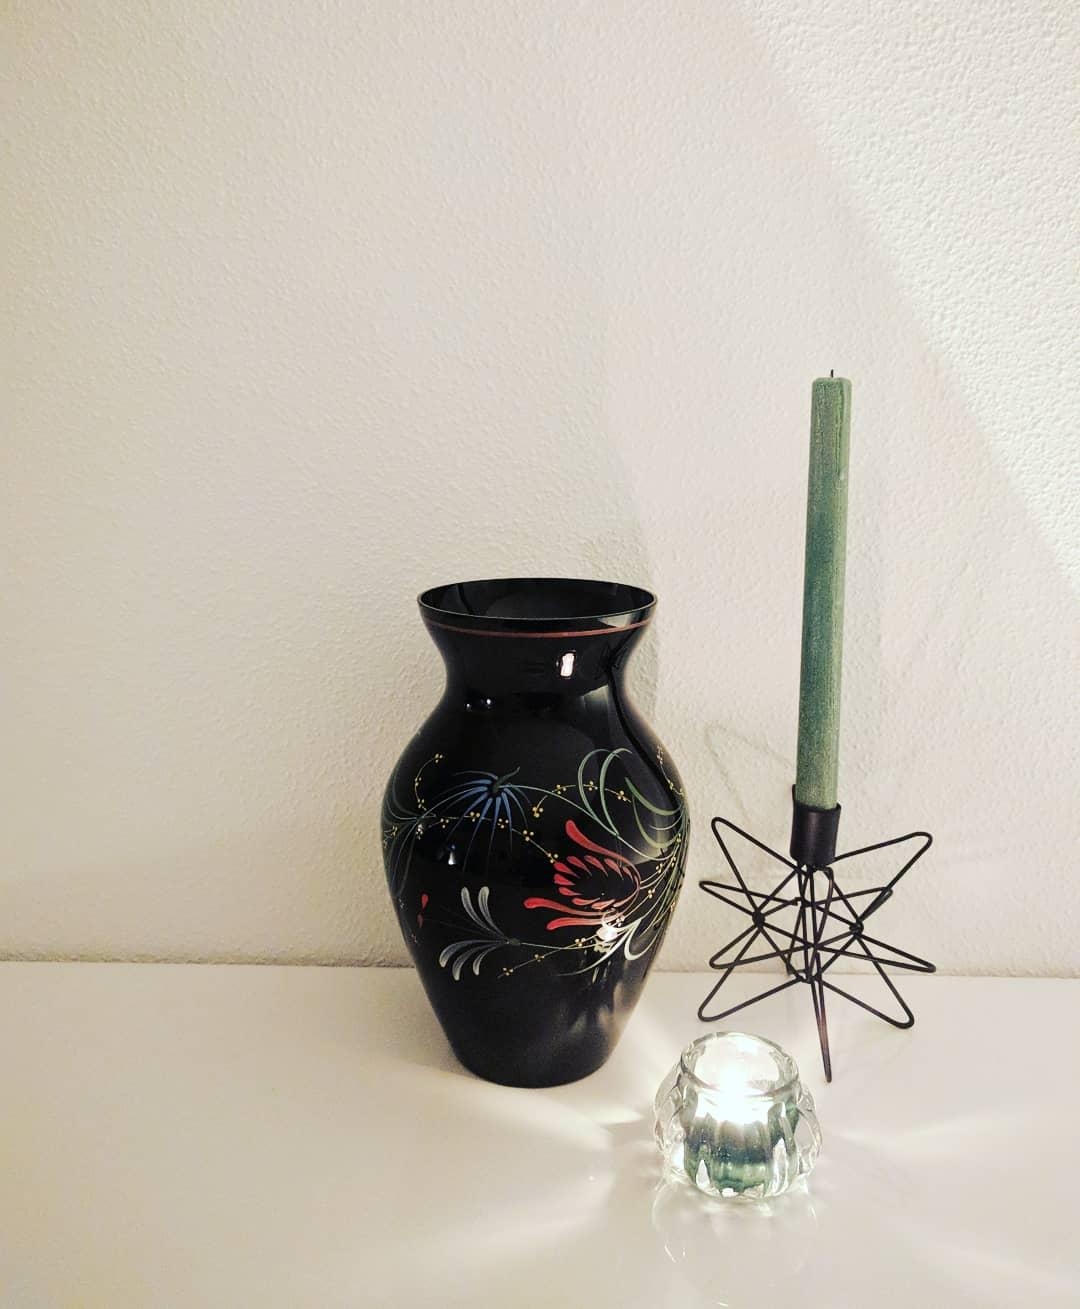 Neueste Errungenschaft: Vintage Vase🖤 #vintage#vase#hyggelig#kerzenlicht#herbstdeko#vasenliebe#kerzenzeit#dekoration